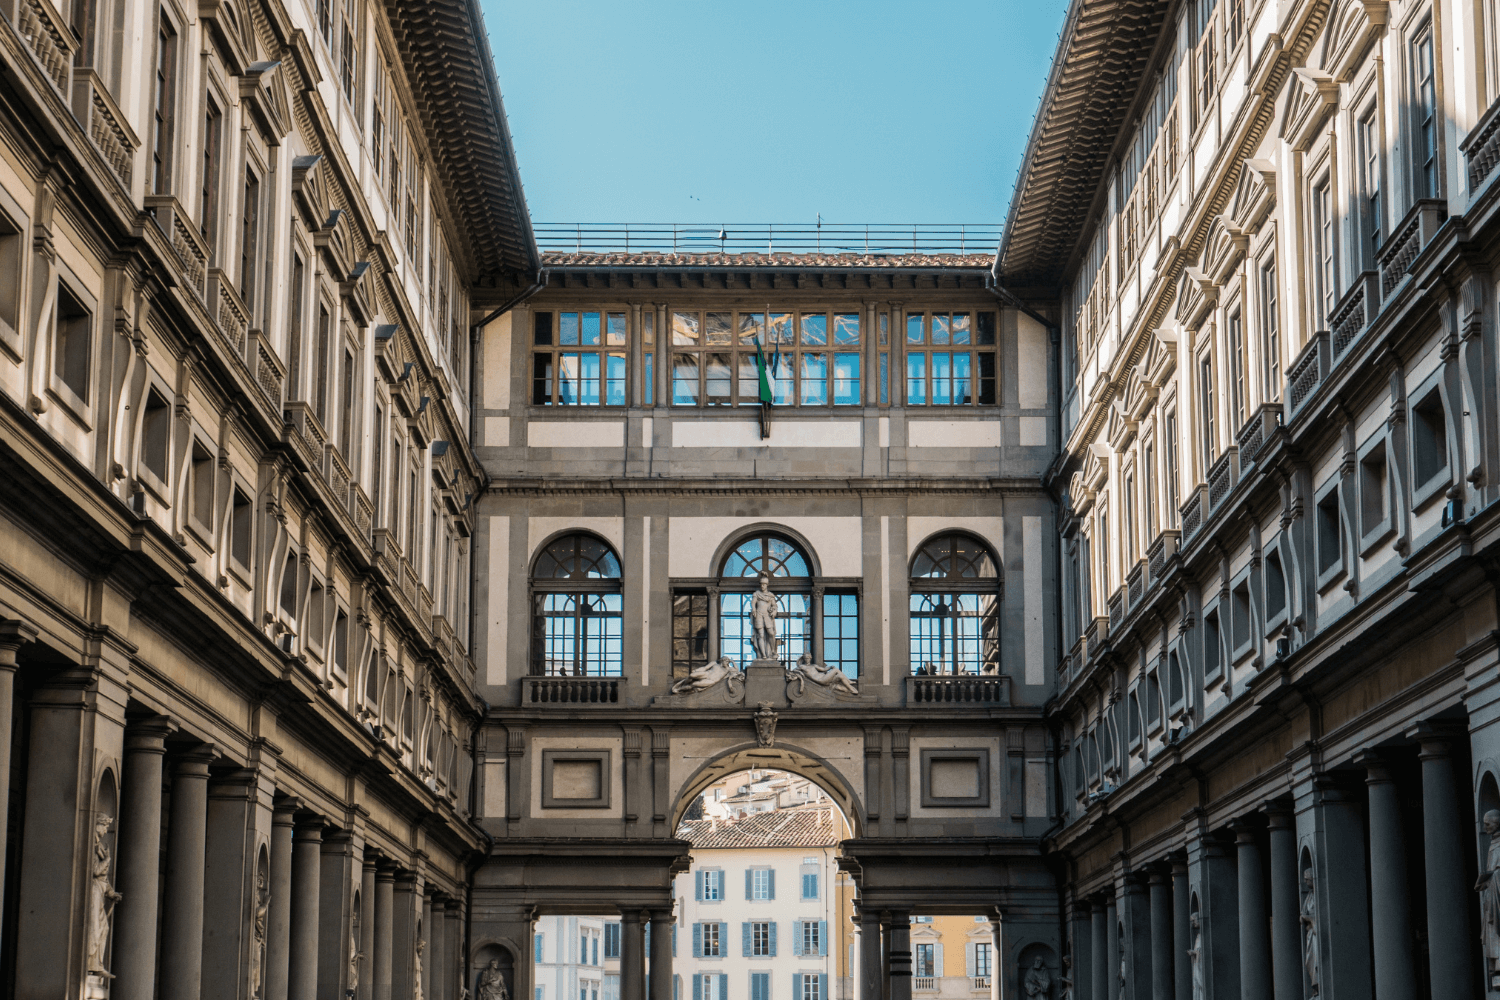 The Uffizi Gallery Florence